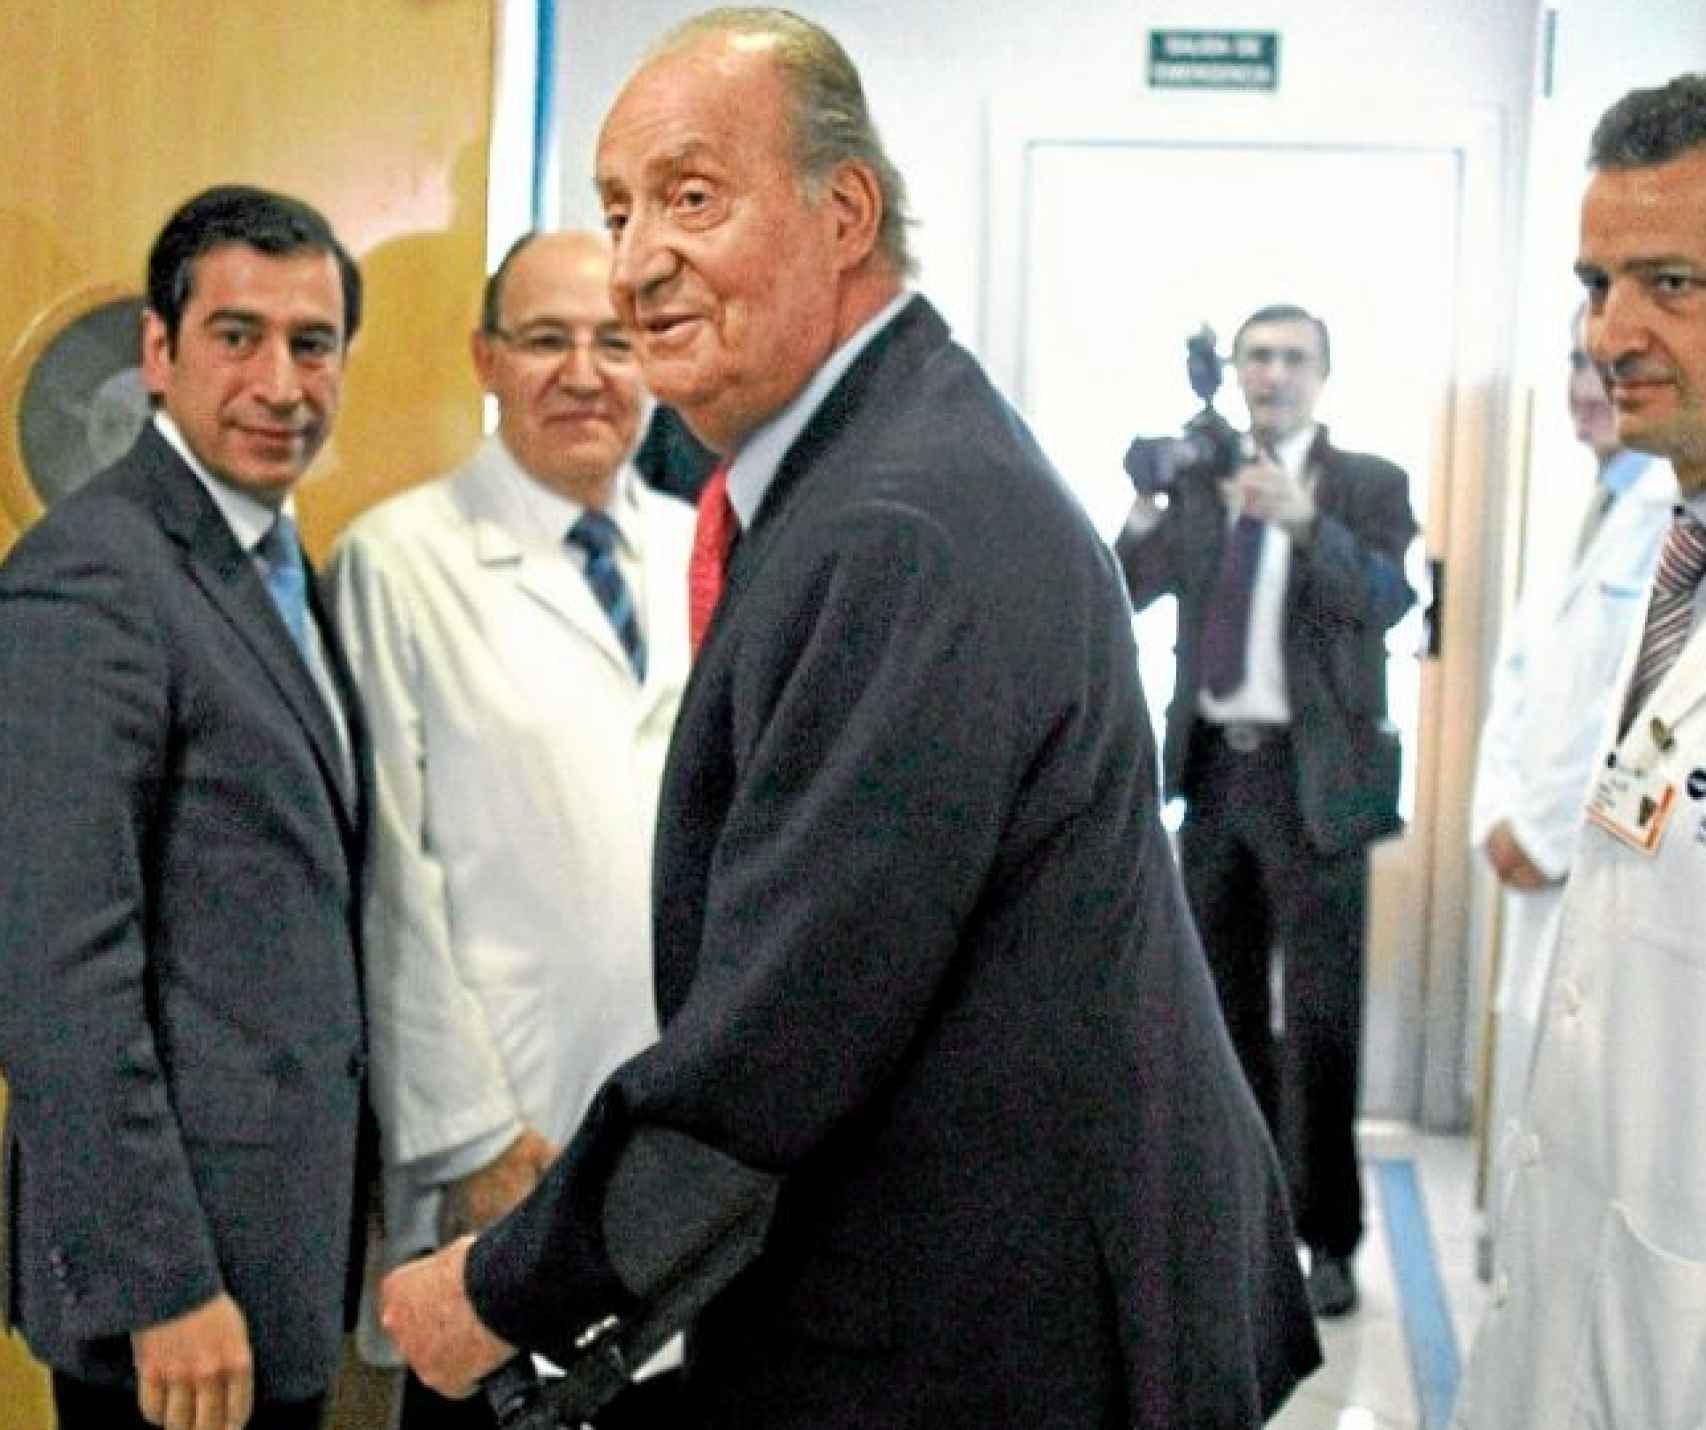 El rey Juan Carlos I saliendo del Hospital San José.